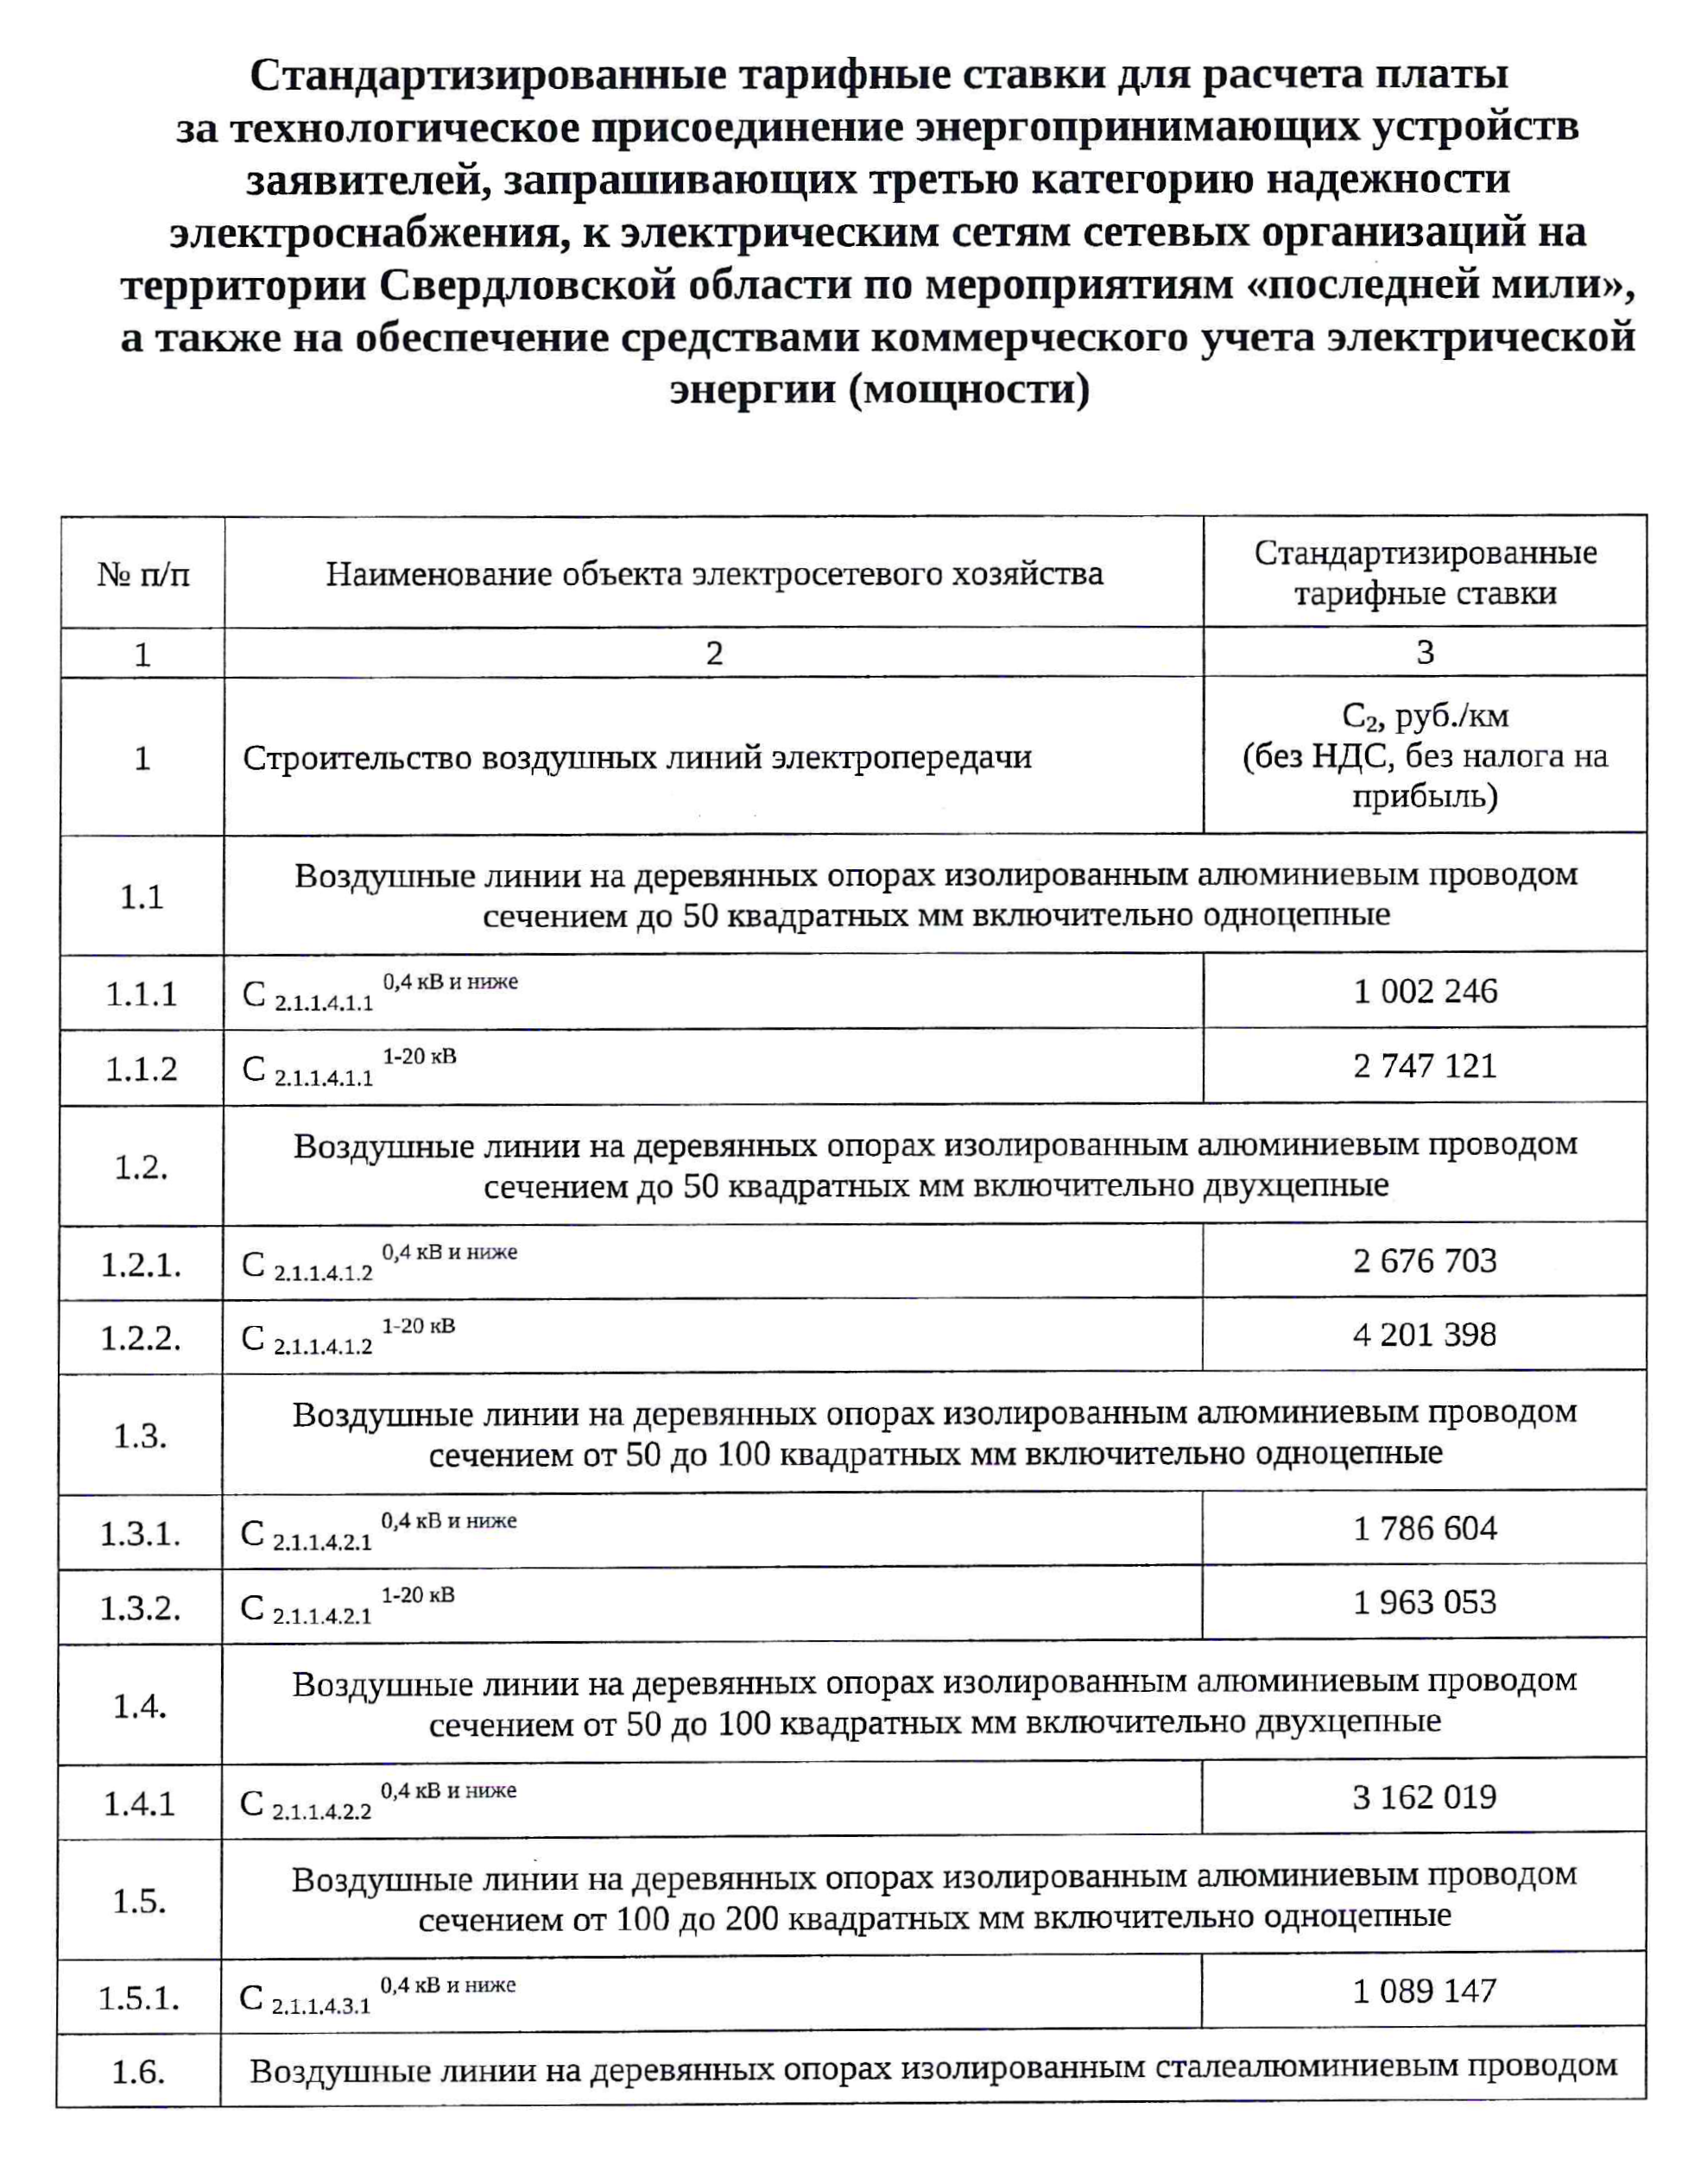 Стандартизированные тарифные ставки по Свердловской области